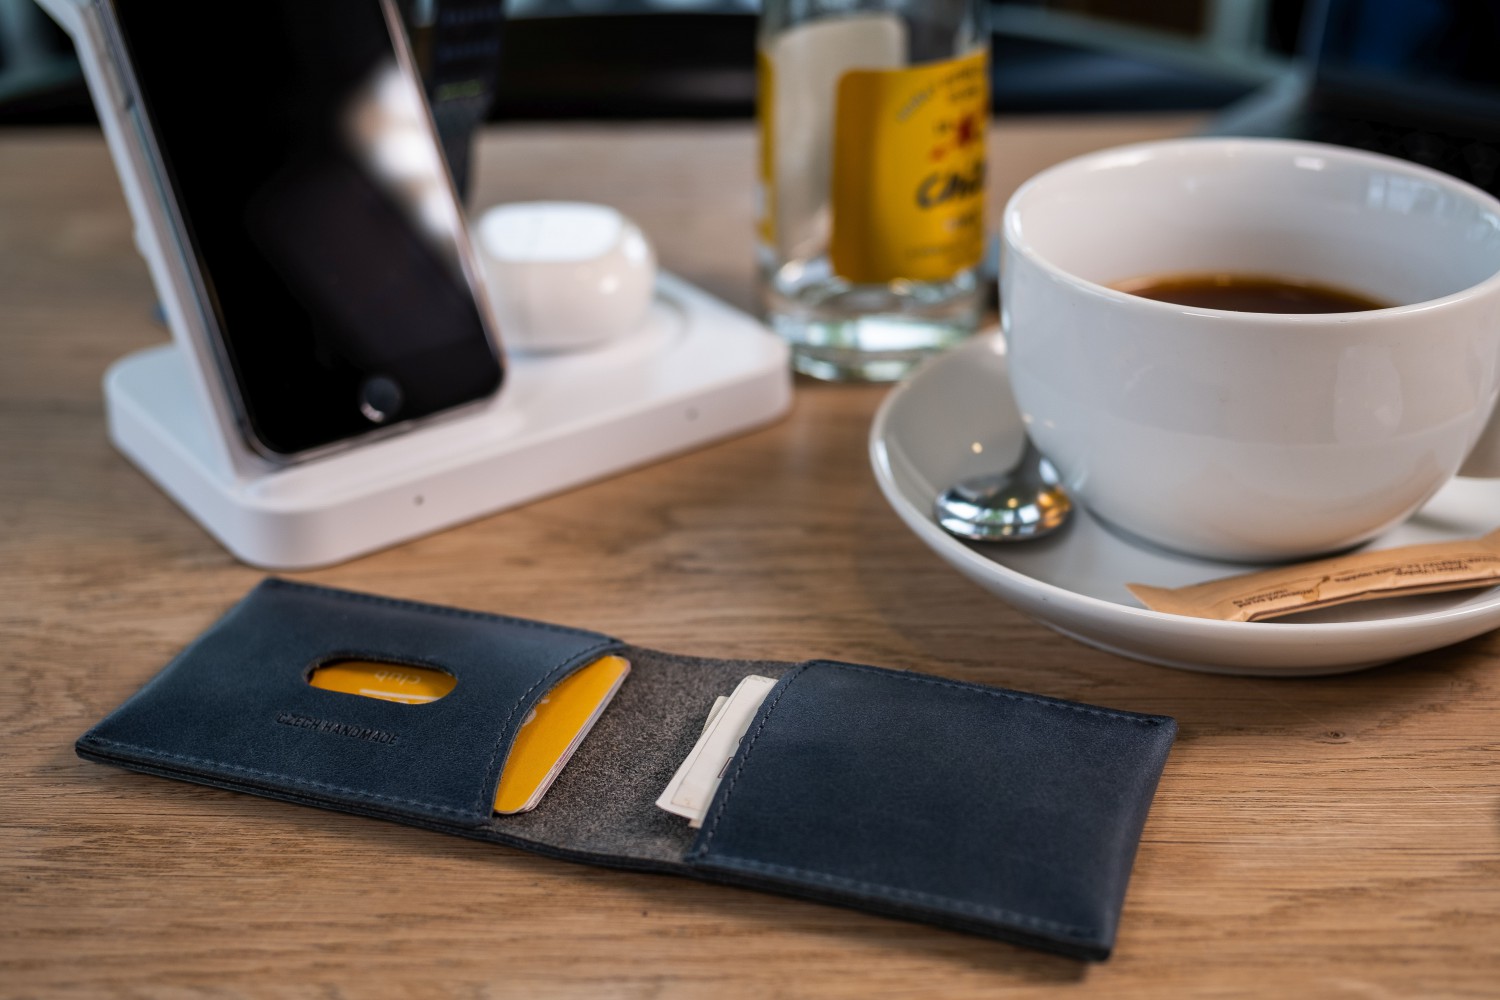 FIXED Wallet Kožená peněženka z pravé hovězí kůže, modrá